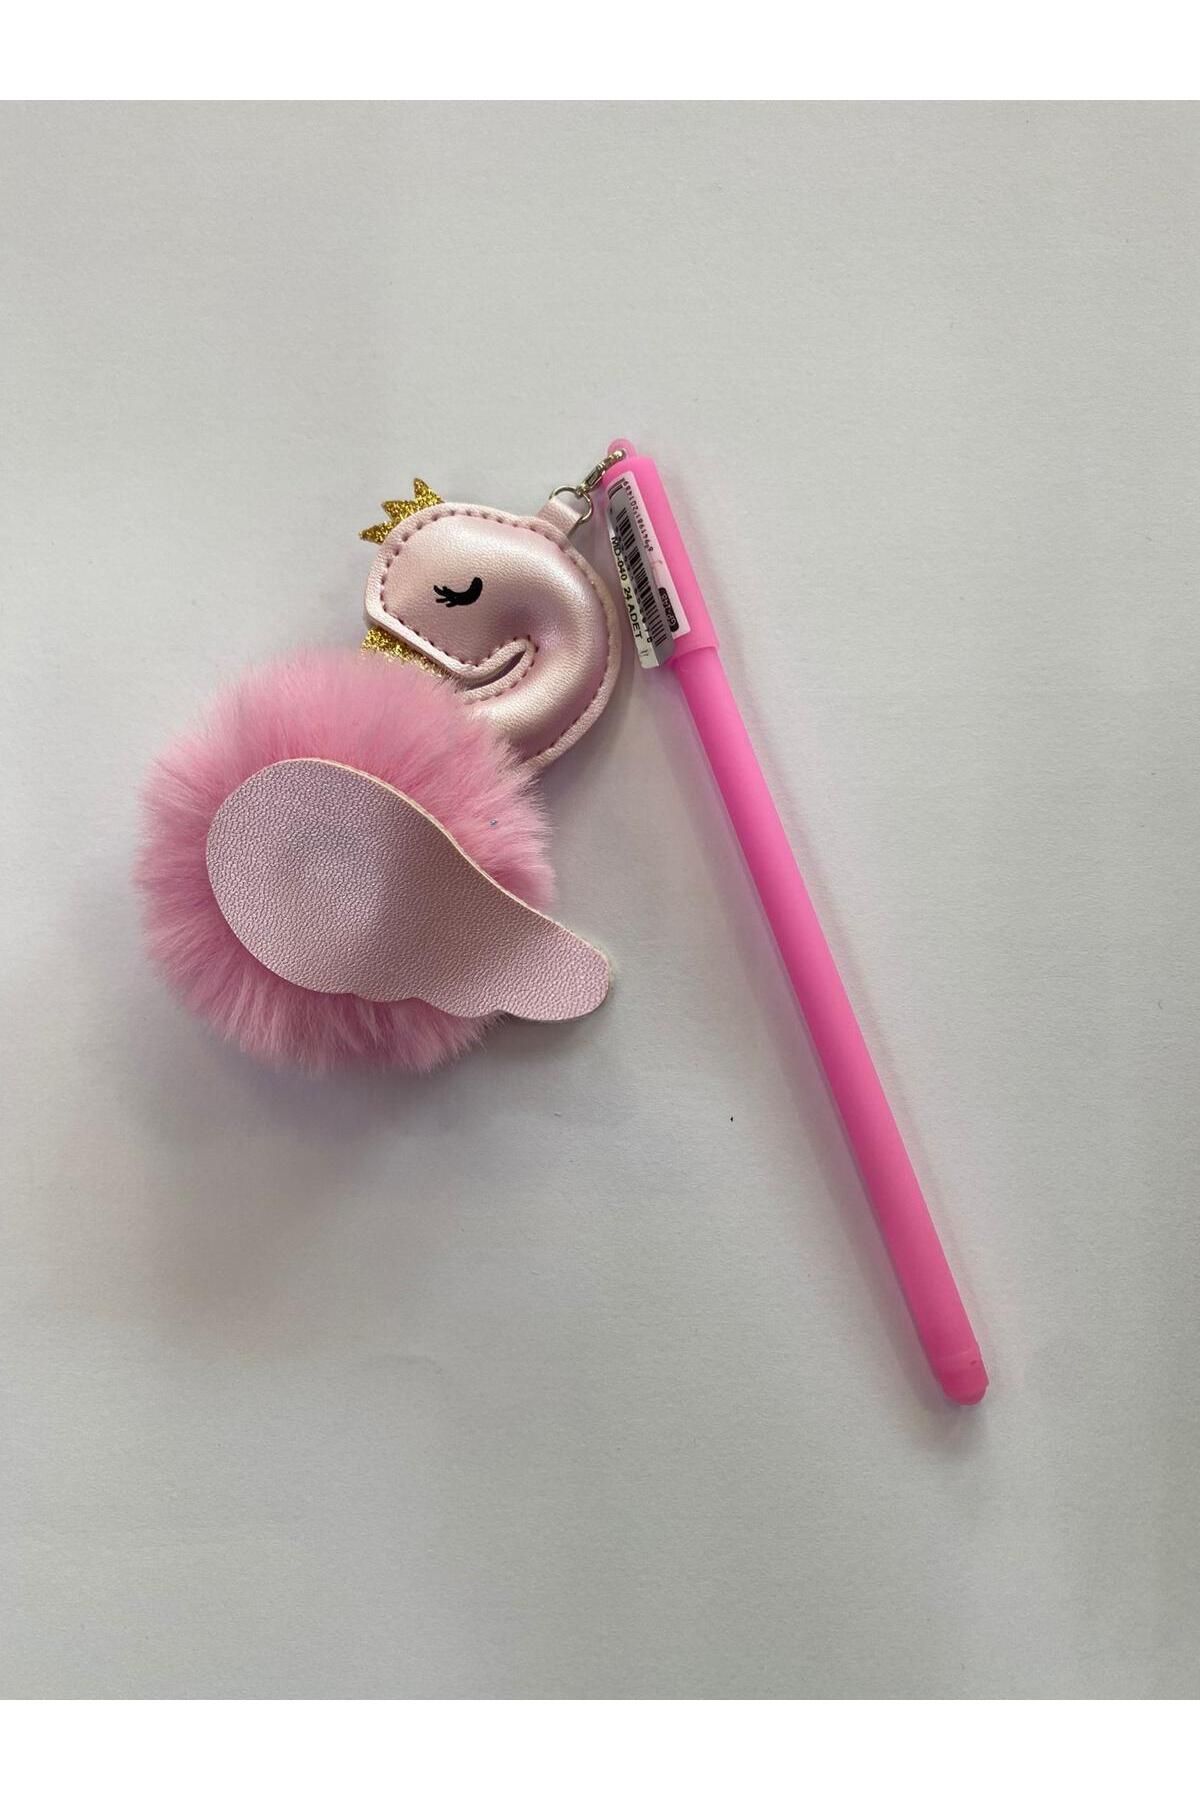 TAROS KIRTASİYE süslü flamingo tükenmez kalem